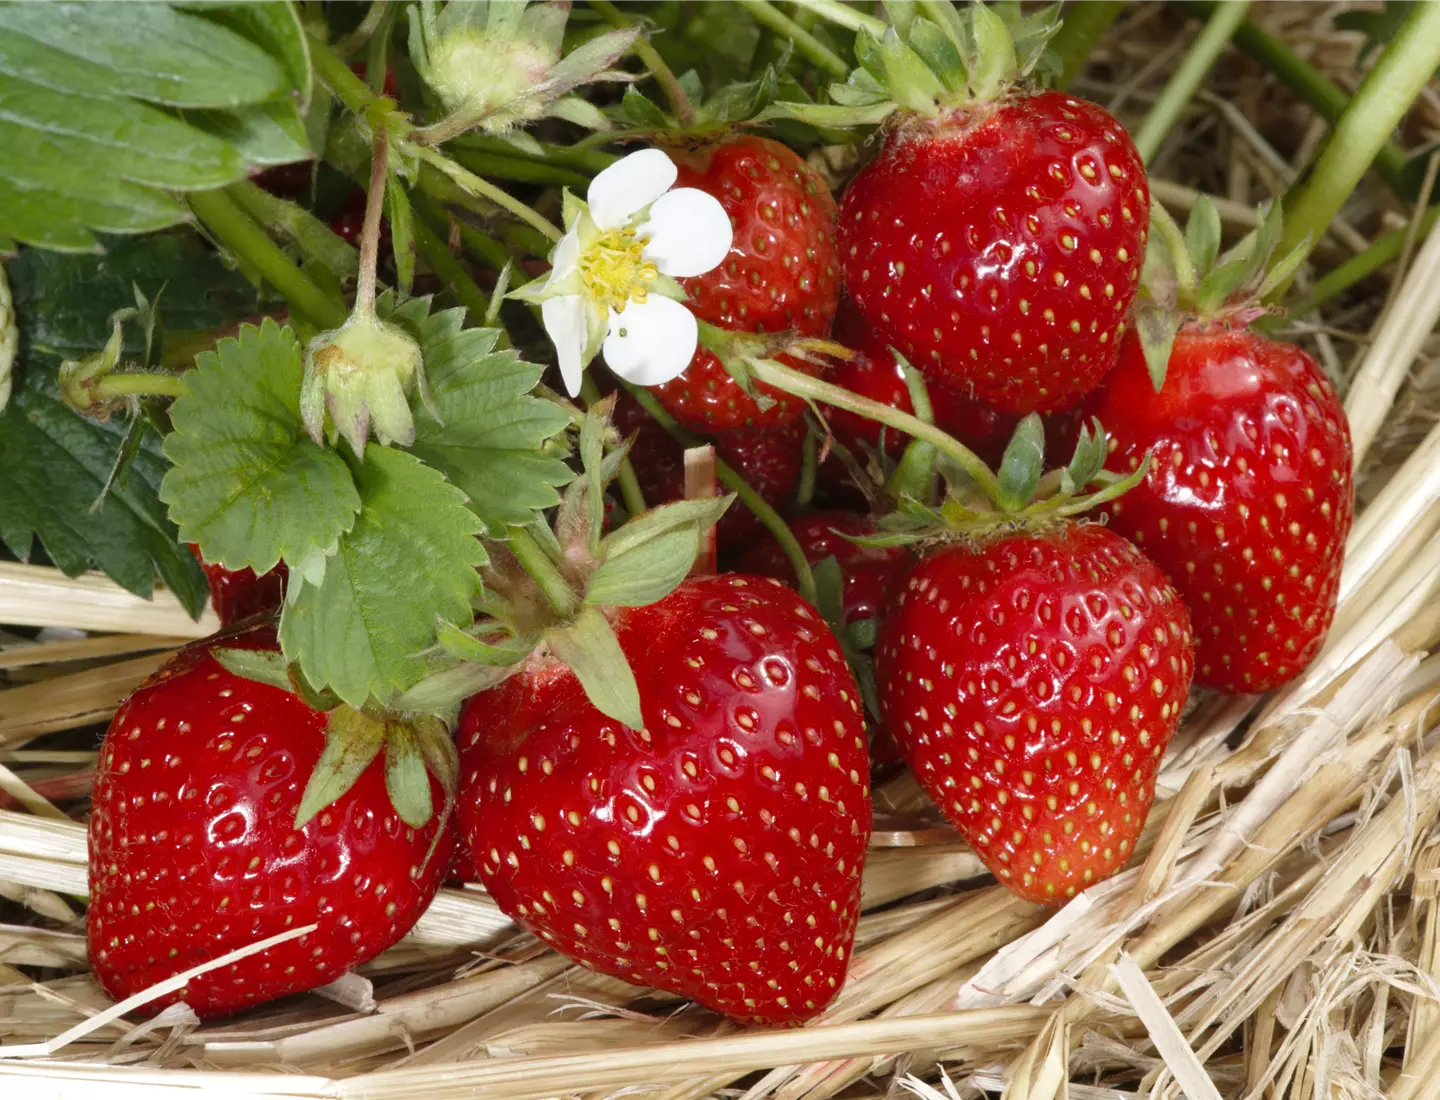 Erdbeeren sind aus dem eigenen Garten richtig lecker